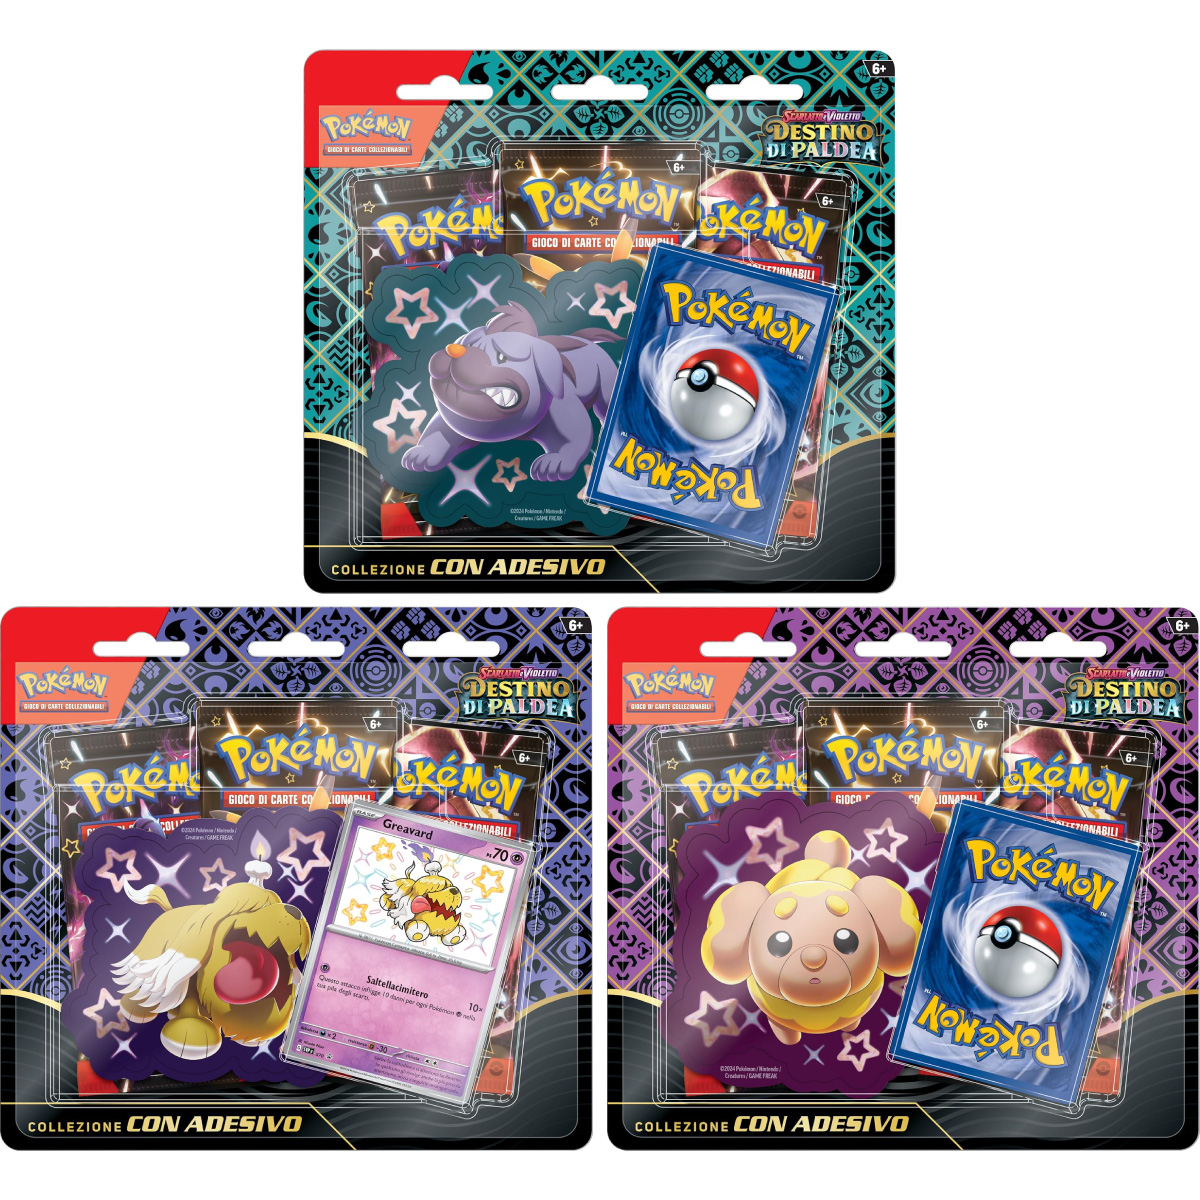 pokemon gcc - pokemon scarlatto e violetto destino di paldea - collezione completa 3 collezione con adesivo (ita) - pk61441